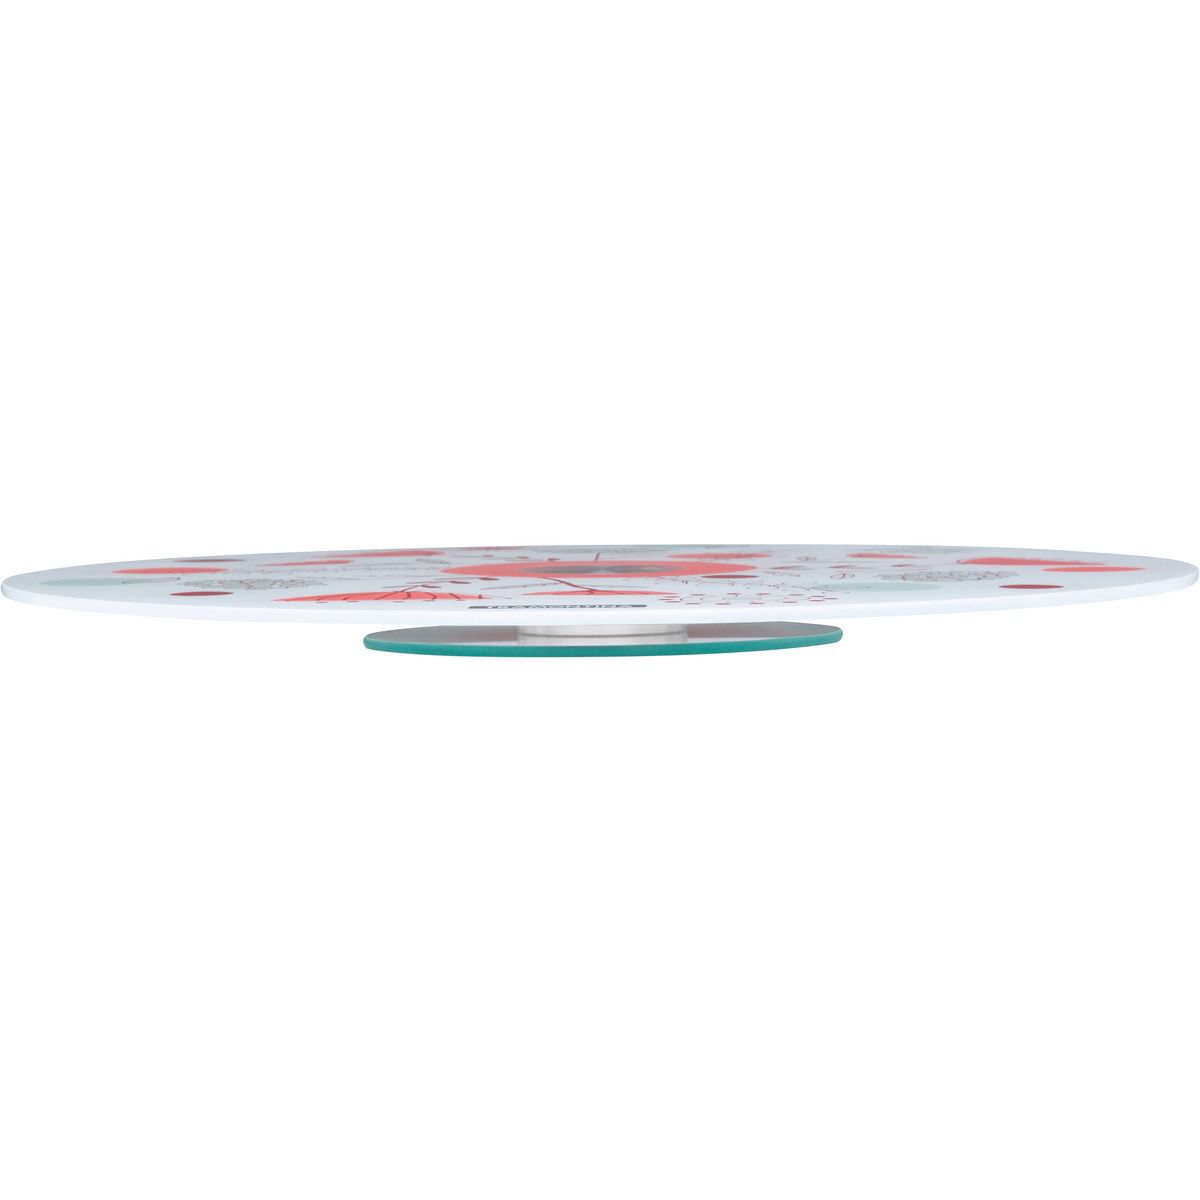 Suporte para Bolo Tramontina em Vidro Temperado Branco com Estampa Colorida 40 cm 10399/058 | Lojas Estrela